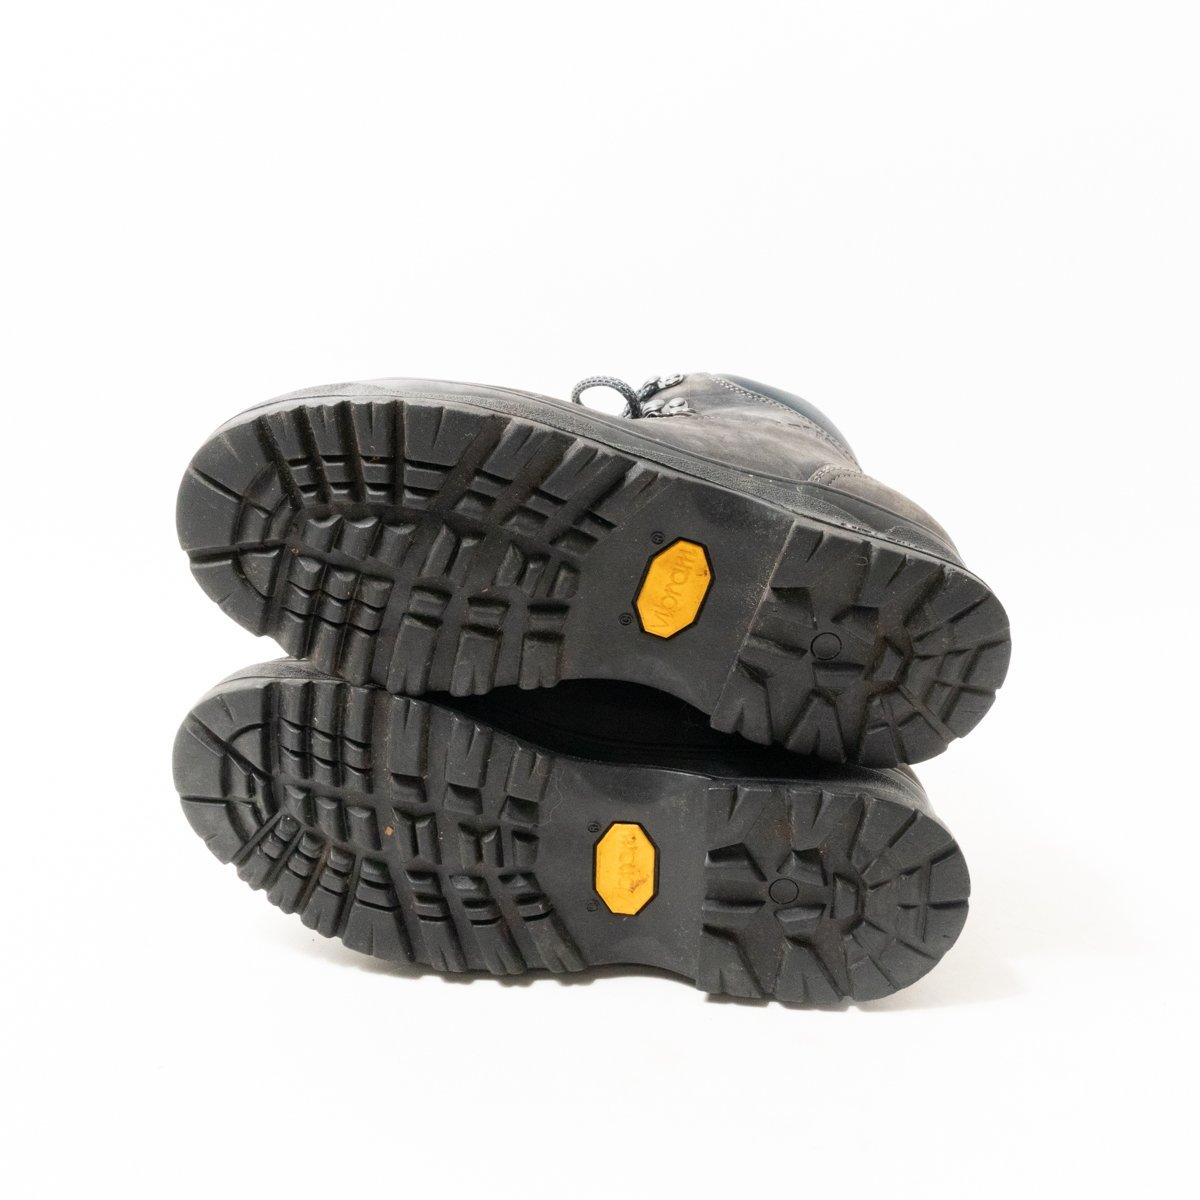 ARMOND アルモンド レザーマウンテンブーツ トレッキングシューズ ブラック 黒 40 25cm相当 イタリア製 メンズ カジュアル vibramソール 靴_画像8